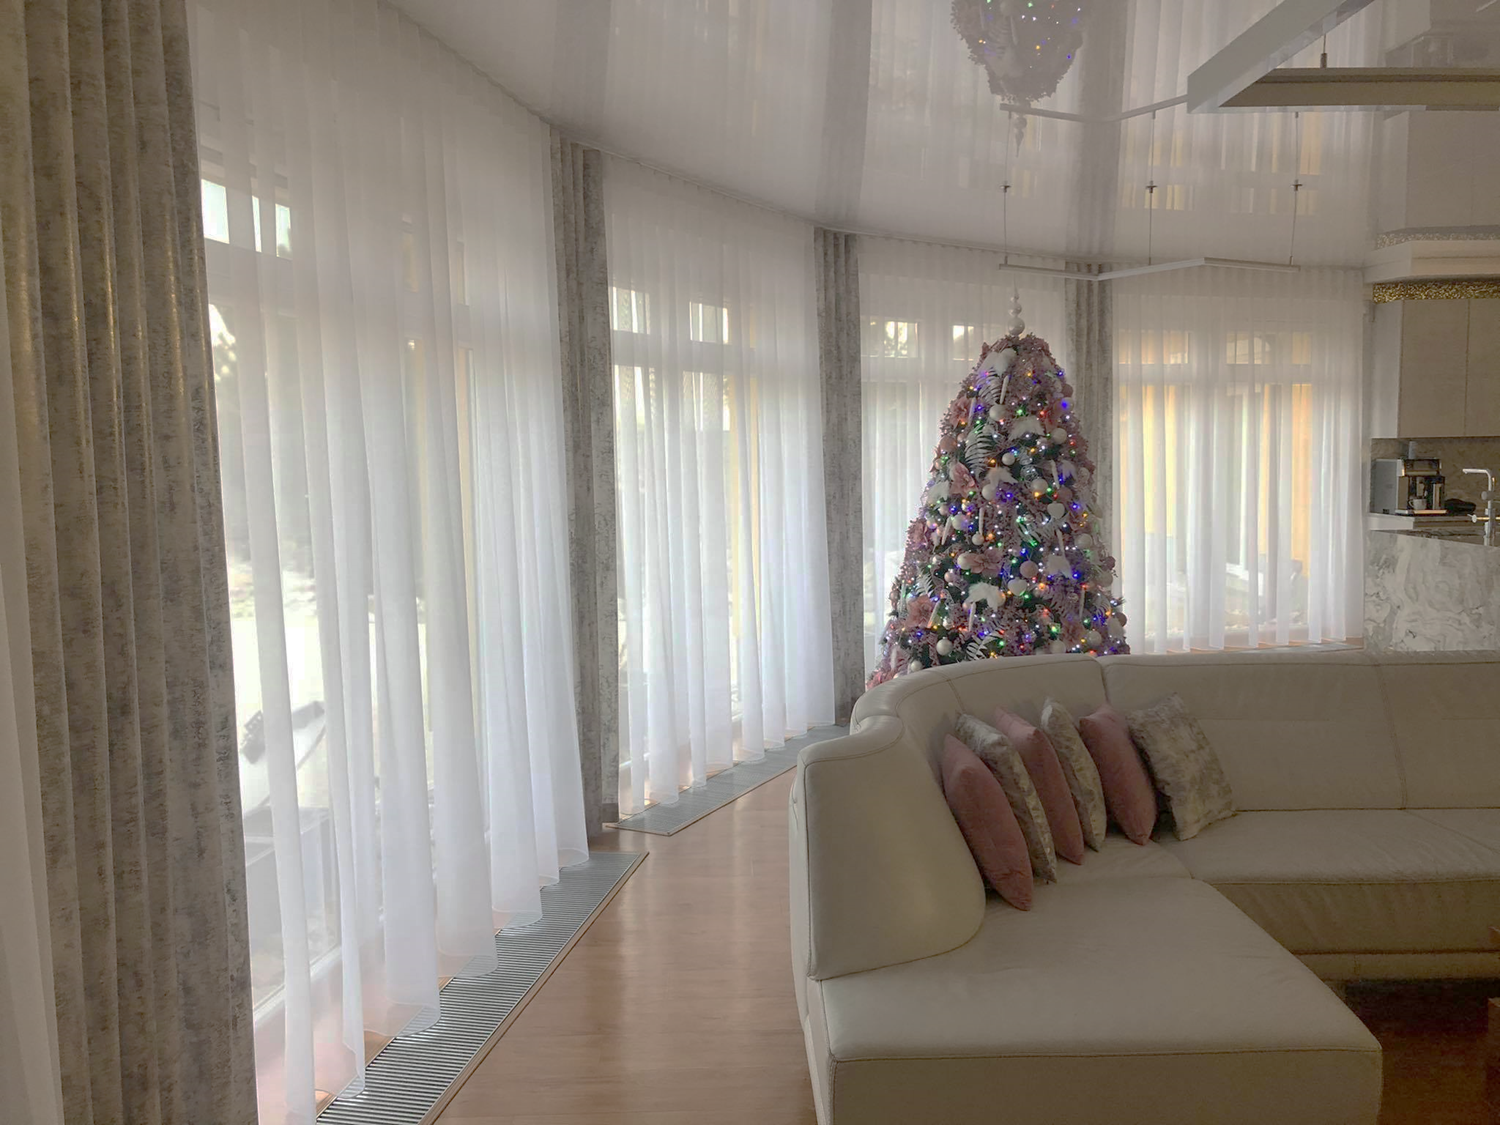 Rodinný dům- řešení stínění obývacího pokoje ve stylu wave pravidelné sklady